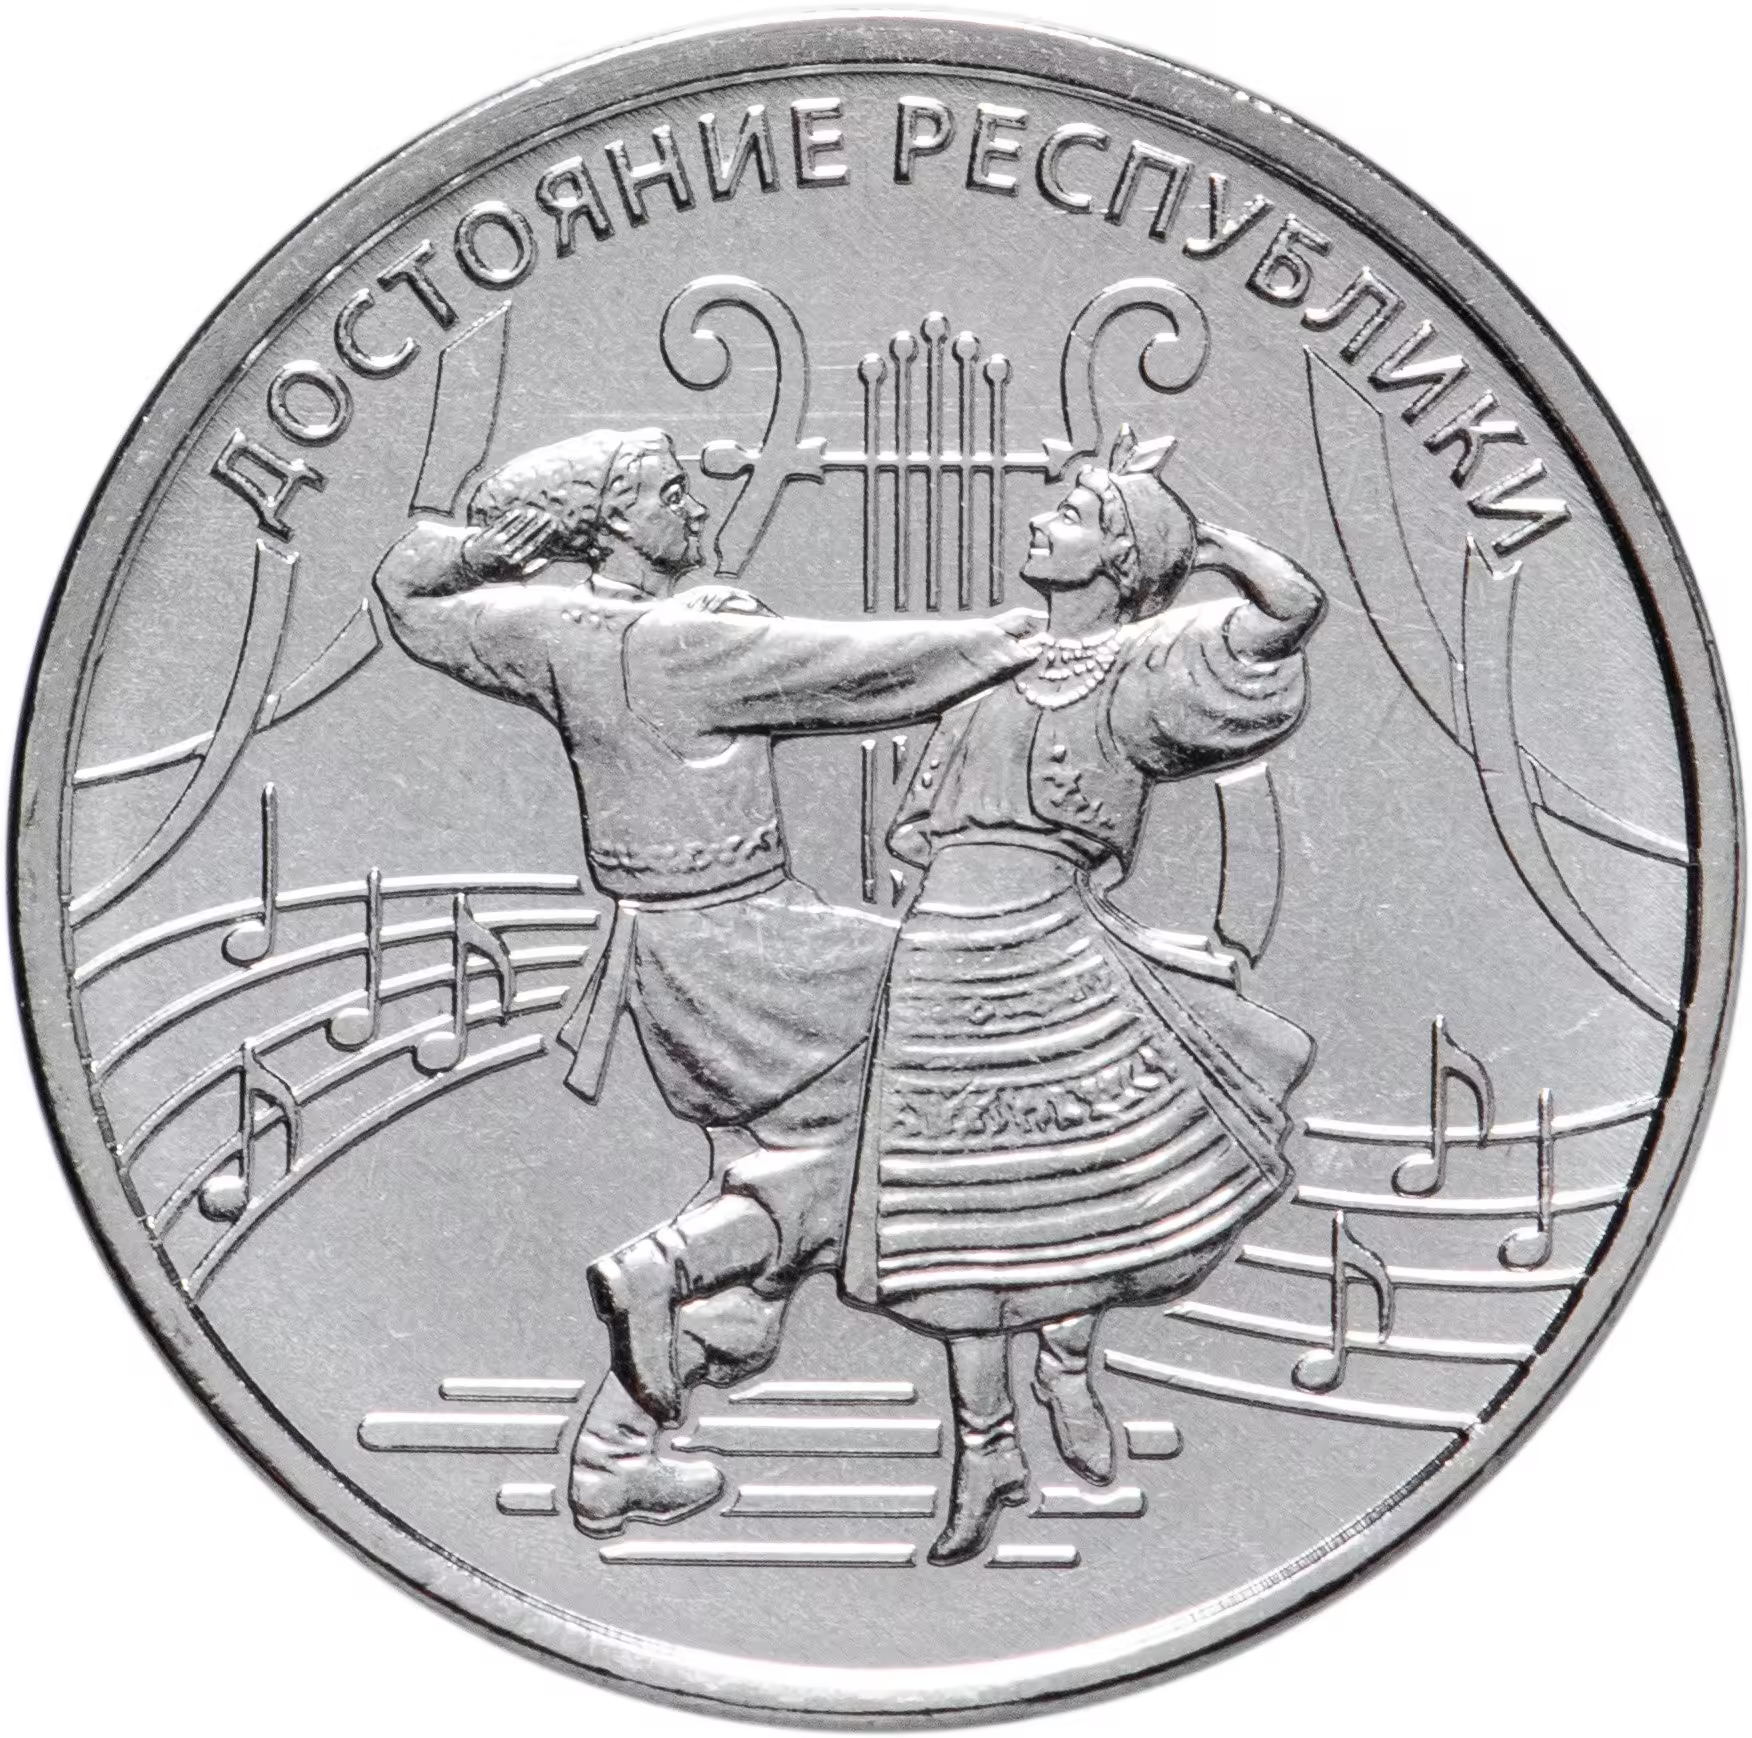 Памятная монета 1 рубль Культура и искусство. Достояние Республики. Приднестровье 2021 г. в. Монета в состоянии UNC (без обращения)